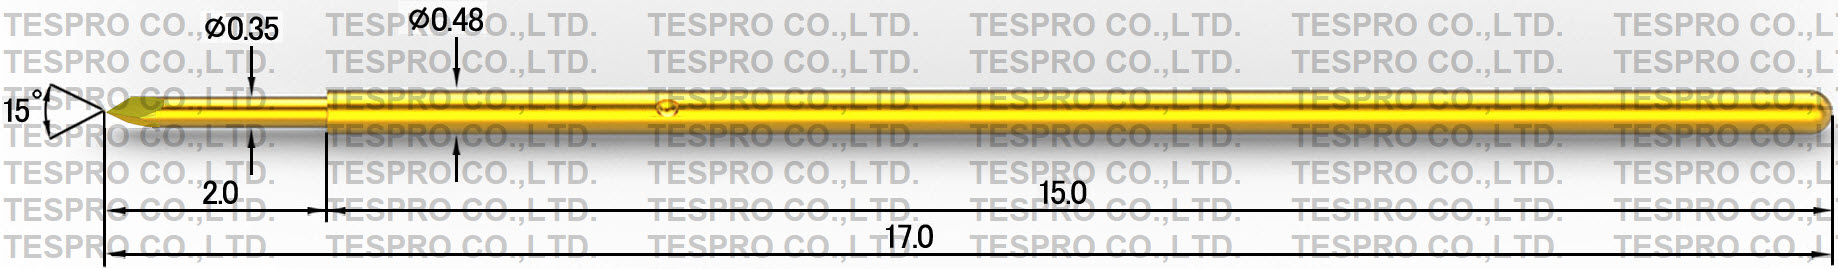 http://tespro-jp.com/product/TP048_tespro.jpg